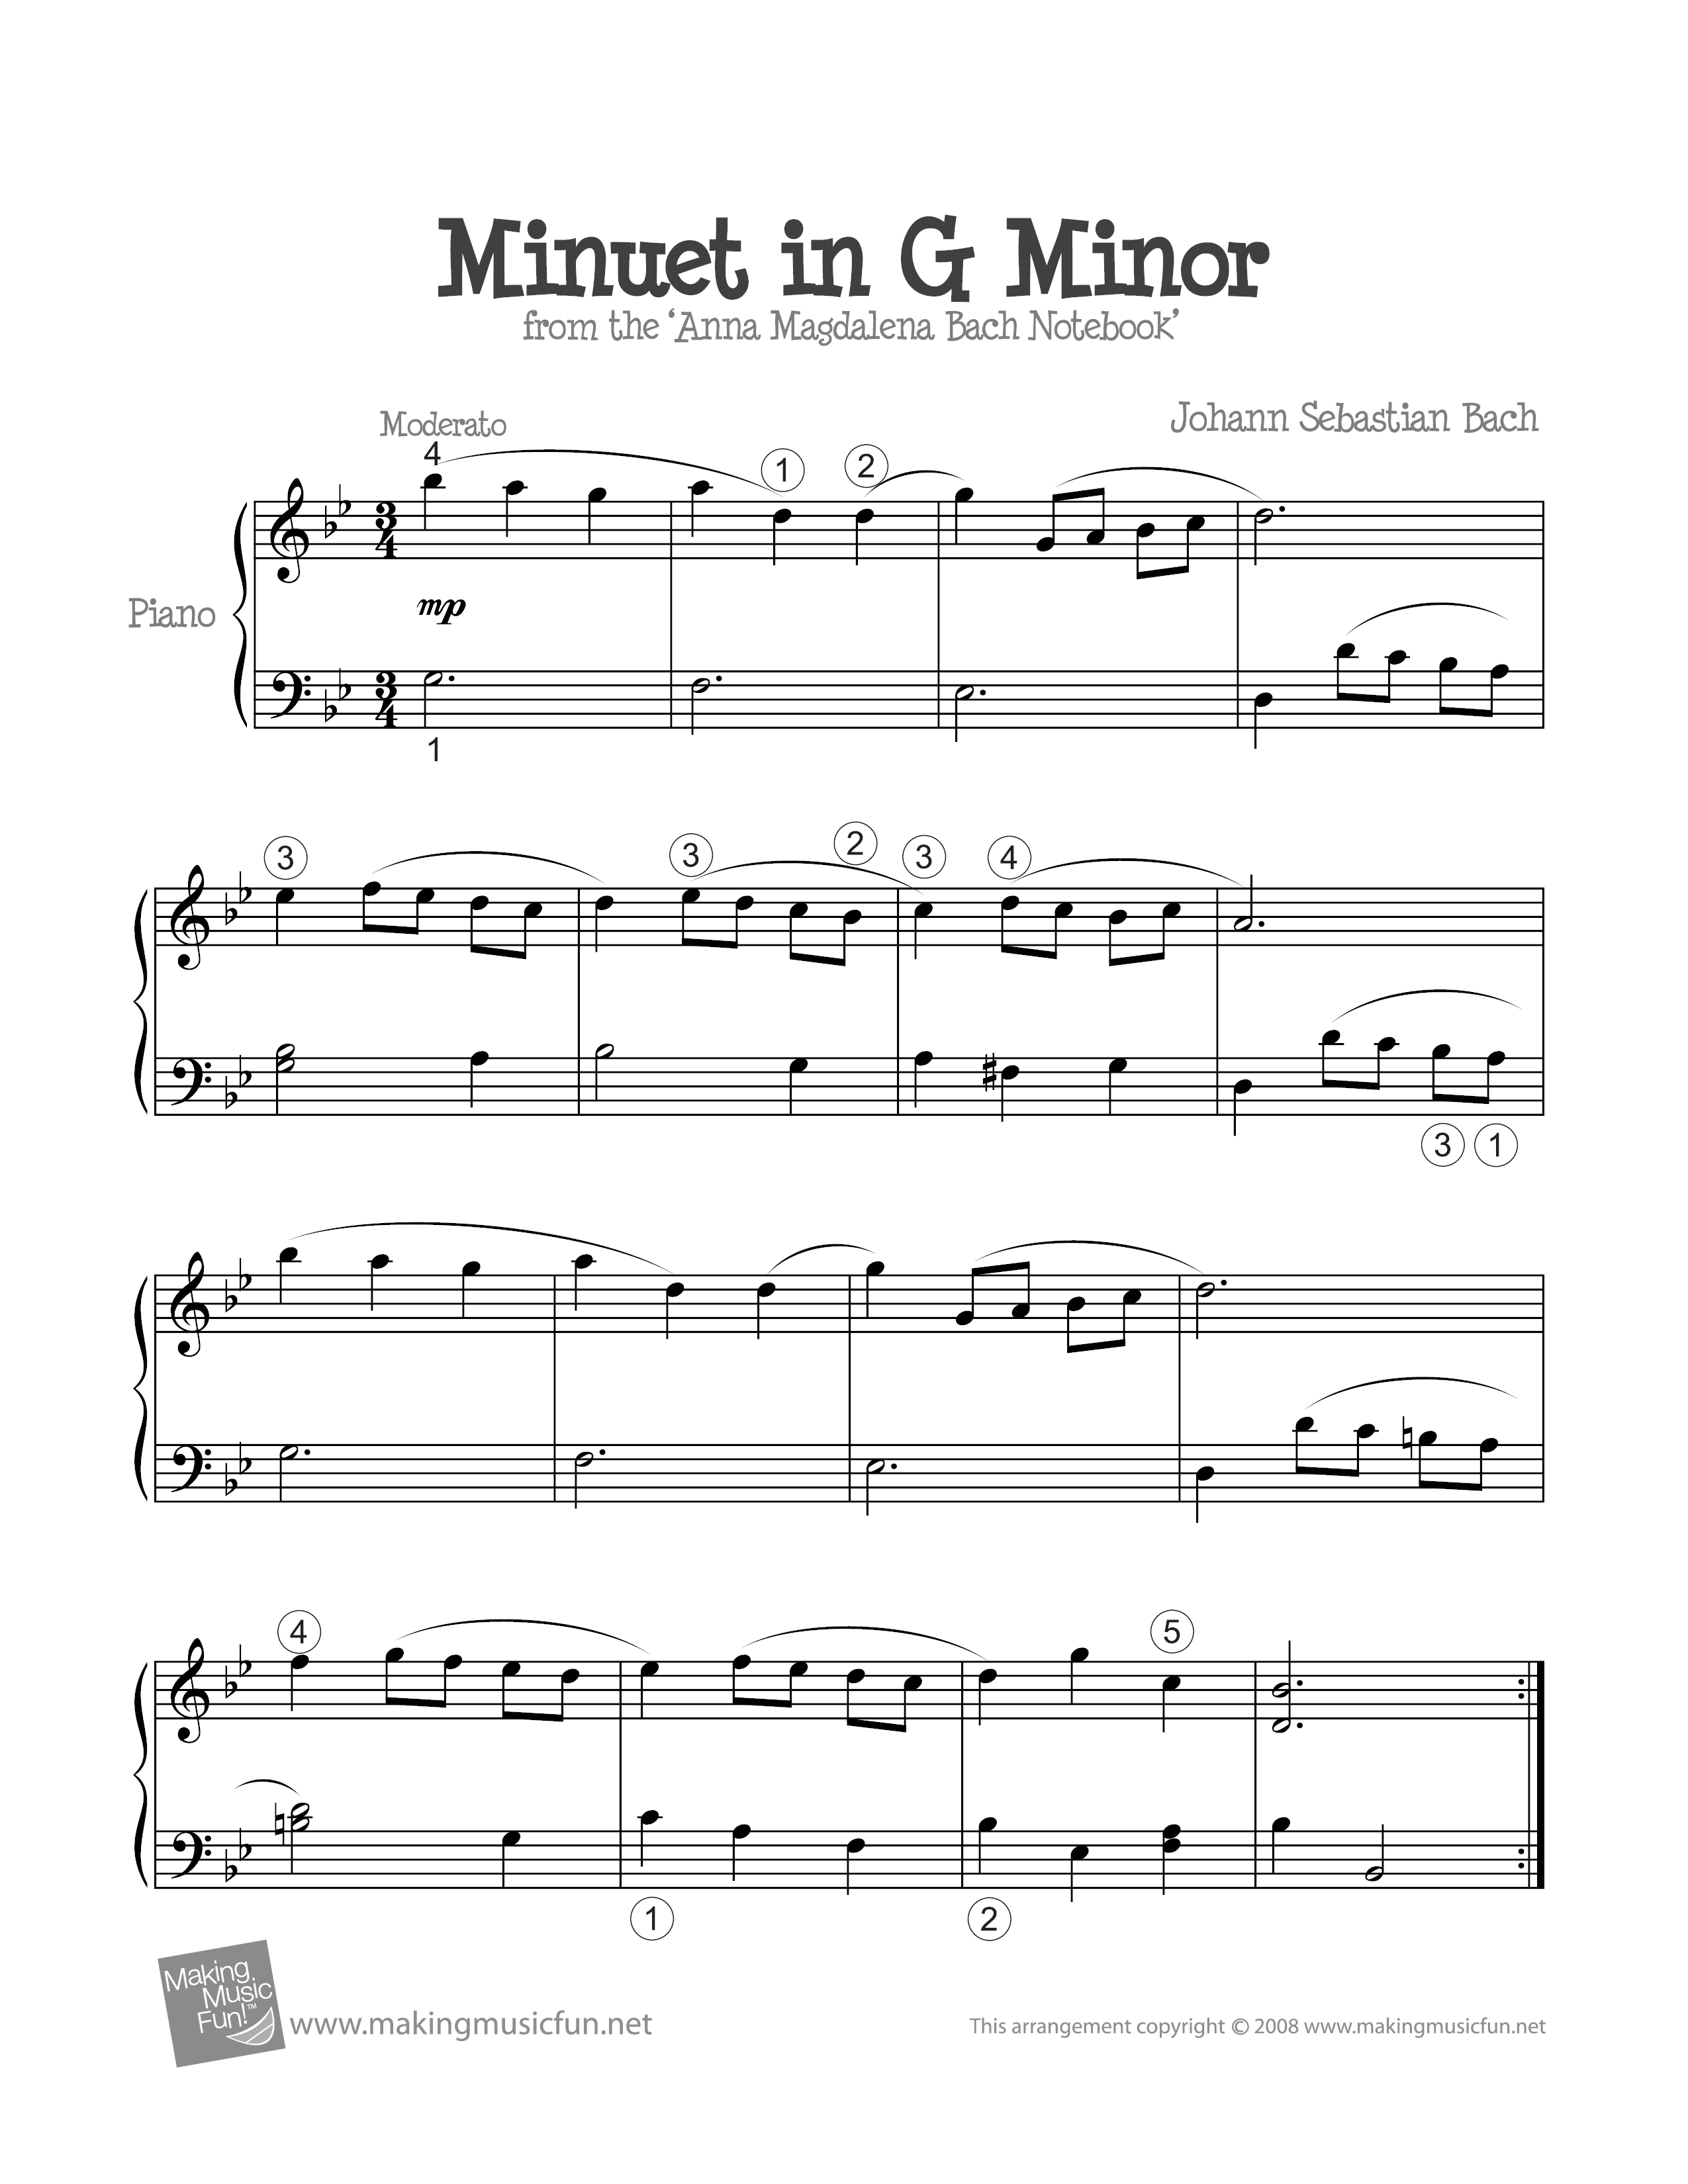 Minuet in G Minorピアノ譜